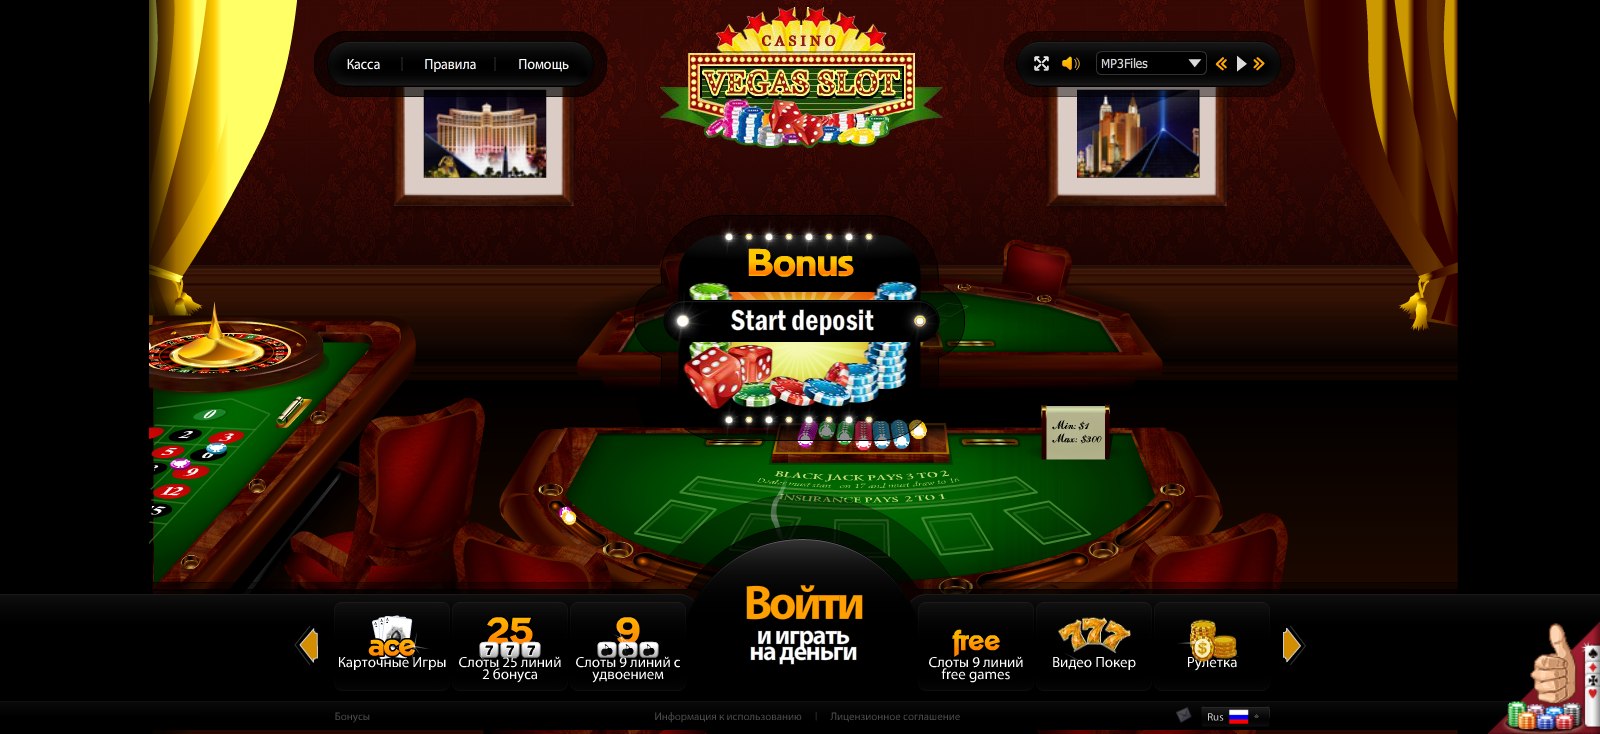 Создать онлайн казино бесплатно самостоятельно дэниел крейг казино рояль смотреть онлайн